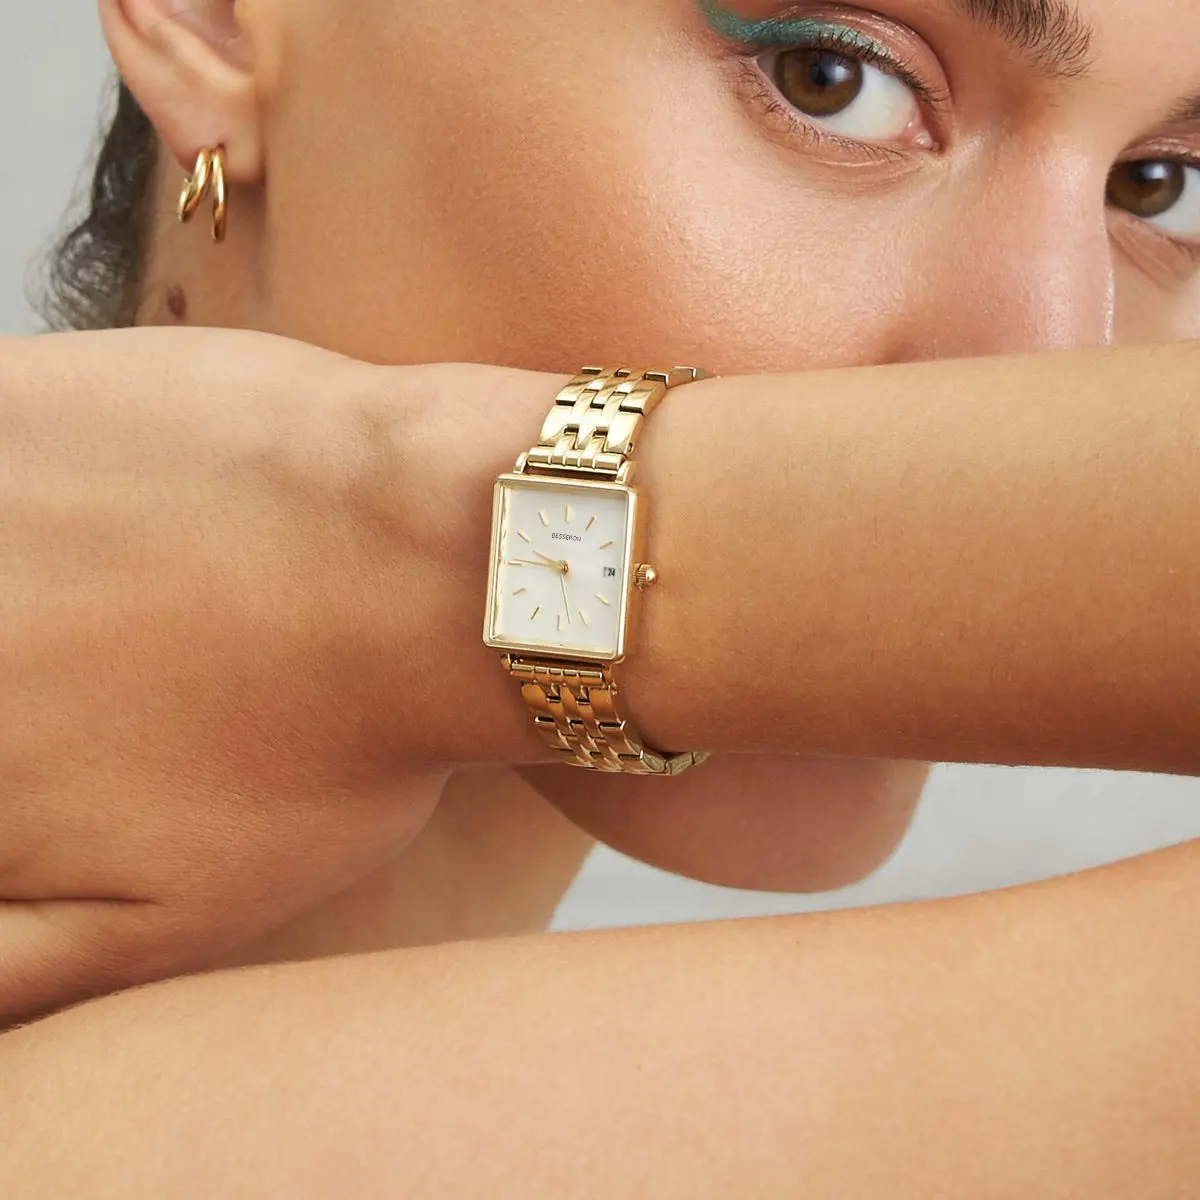 Besseron Proveedor Personalizado Haga su Propio Reloj Logotipo Privado hip hop Pulsera Reloj Acero Inoxidable Oficina Señora Mujer Relojes